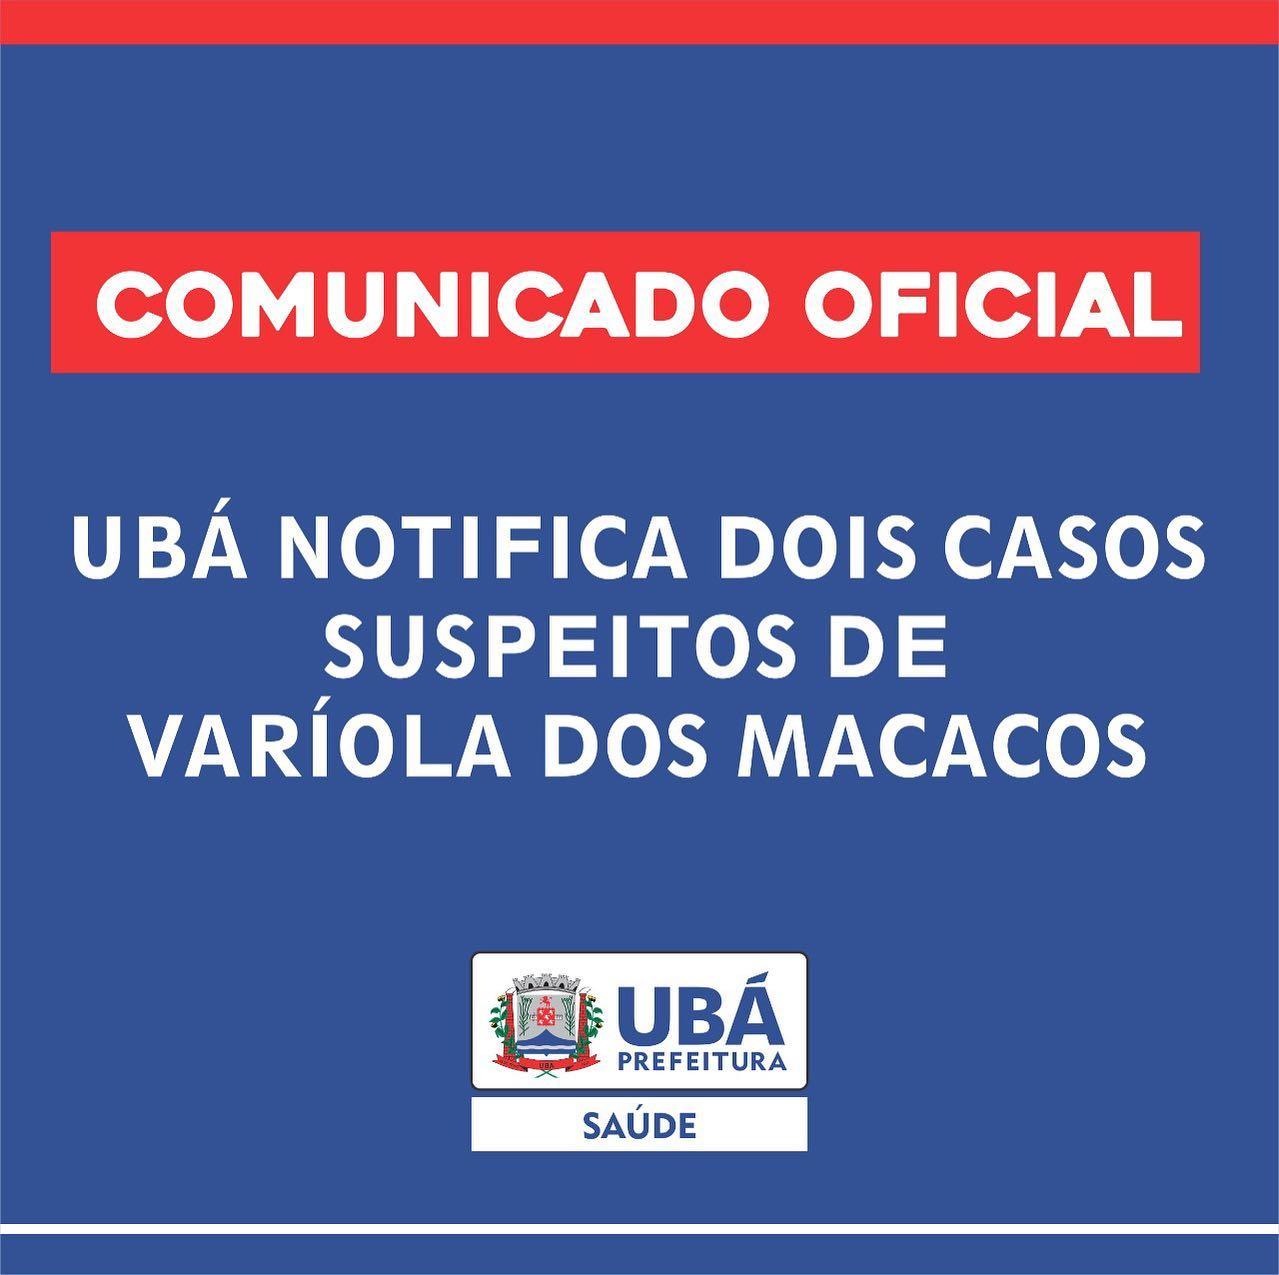 Ubá confirma os 2 primeiros casos suspeitos de Varíola dos Macacos (monkeypox) no município.